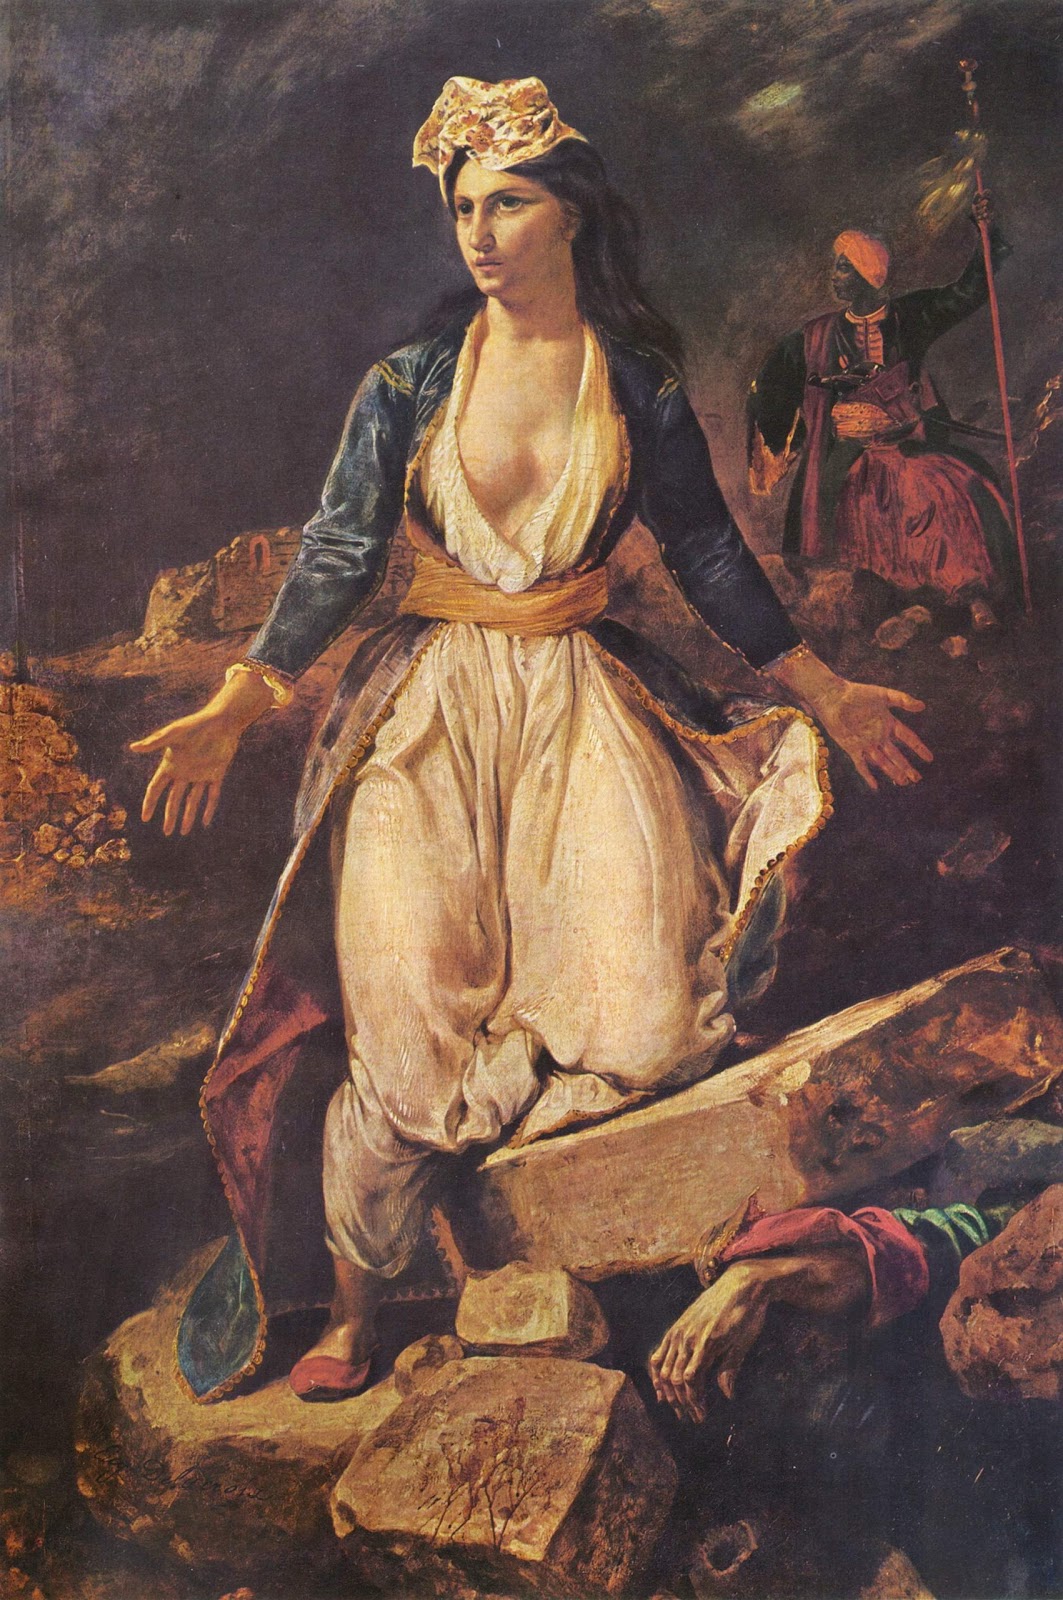 Eugene+Delacroix-1798-1863 (274).jpg